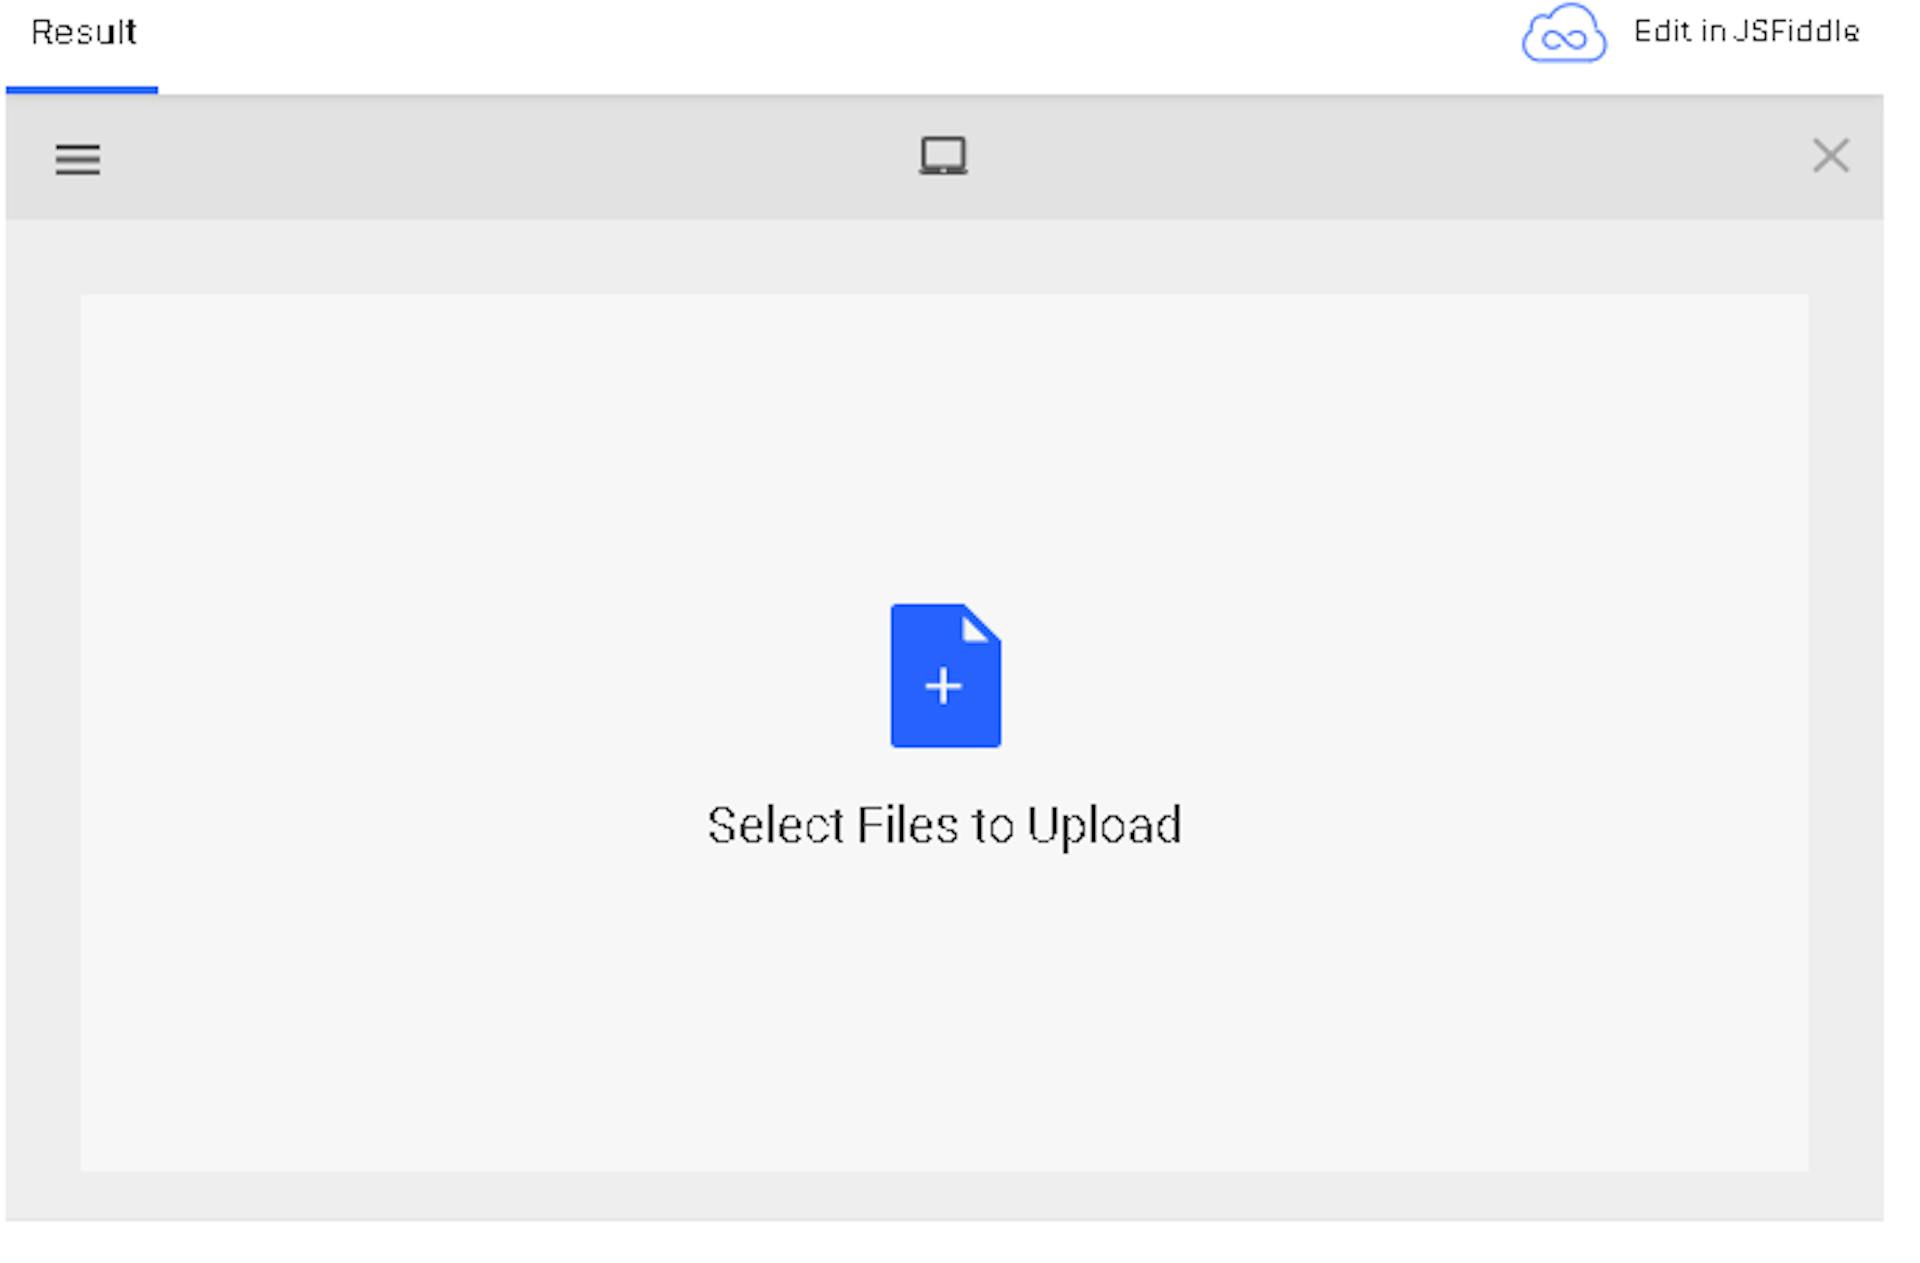 Carregador de arquivos Filestack para upload rápido de imagens